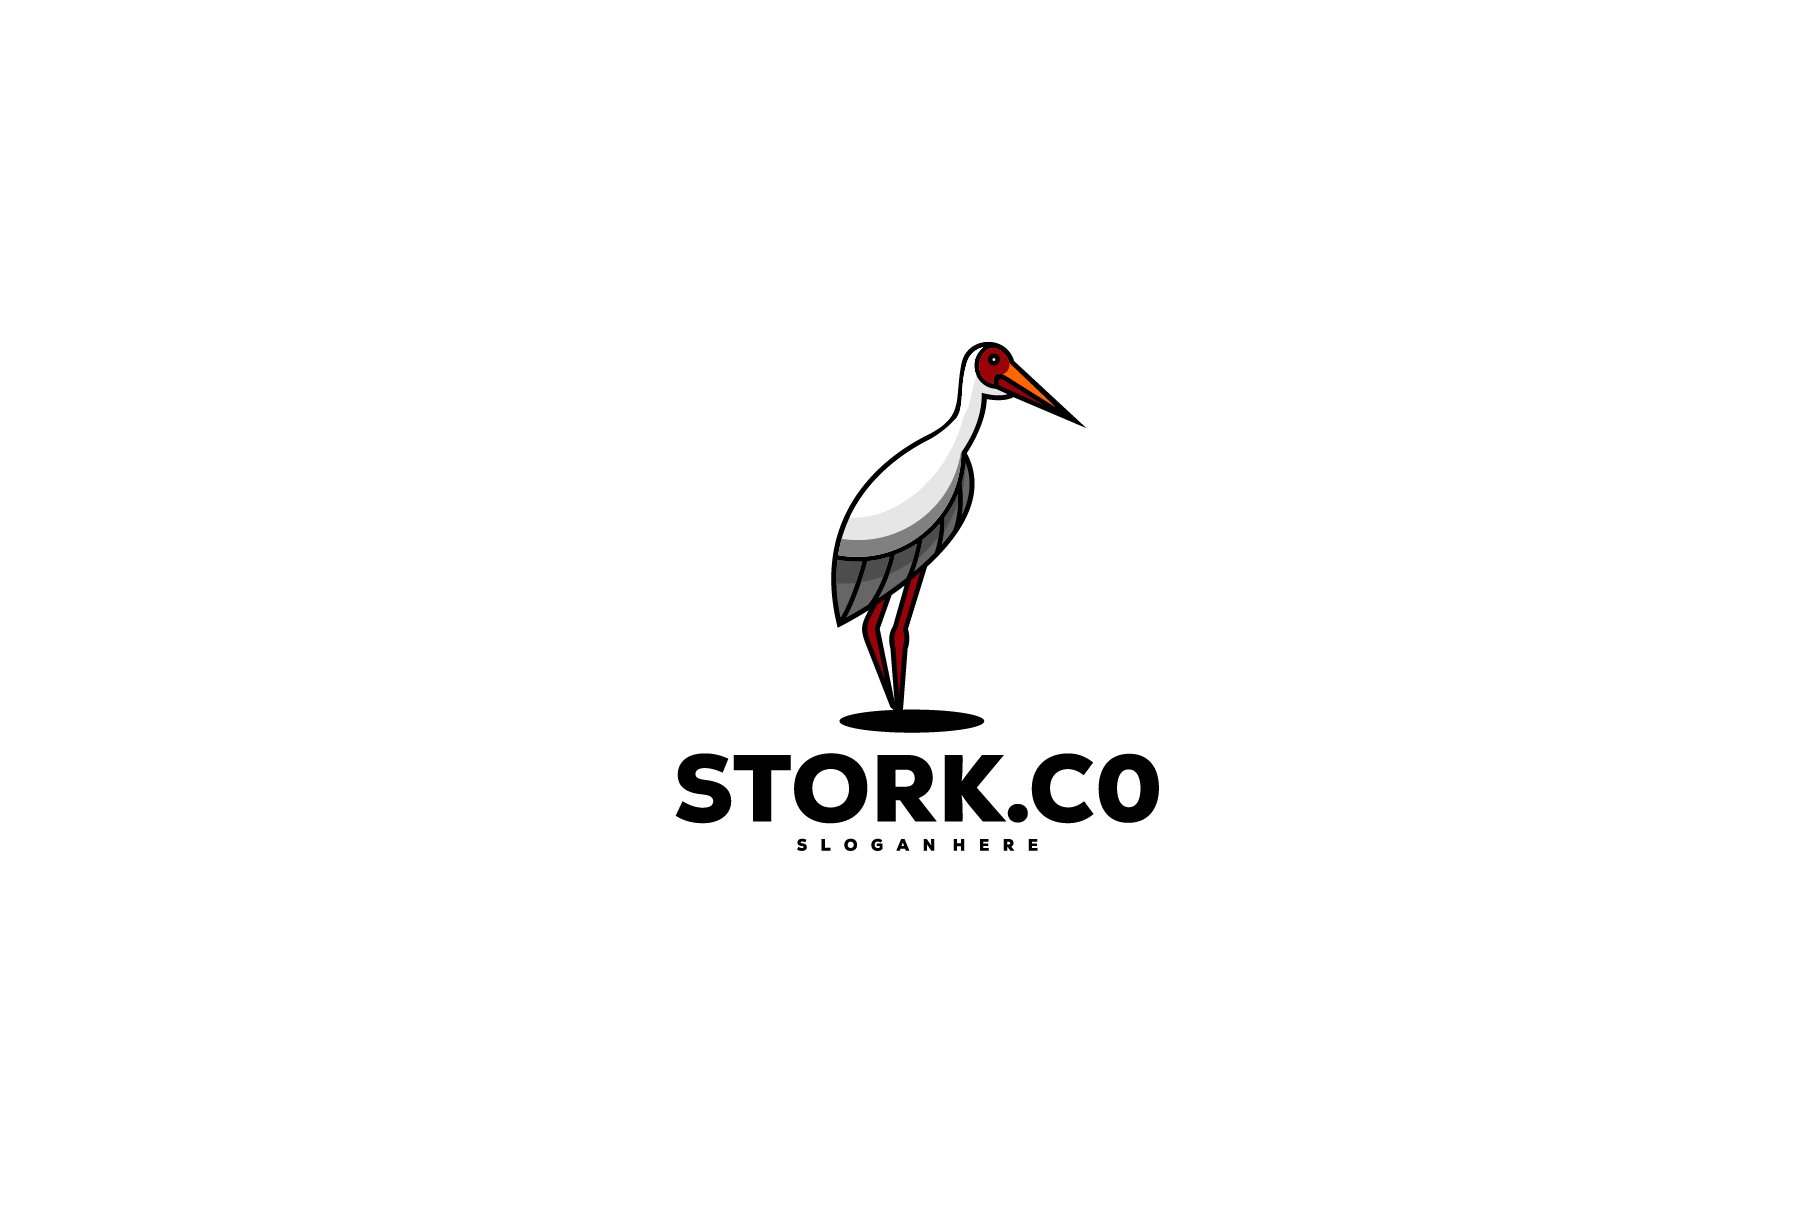 pelican design logo mascot illustrat cover image.